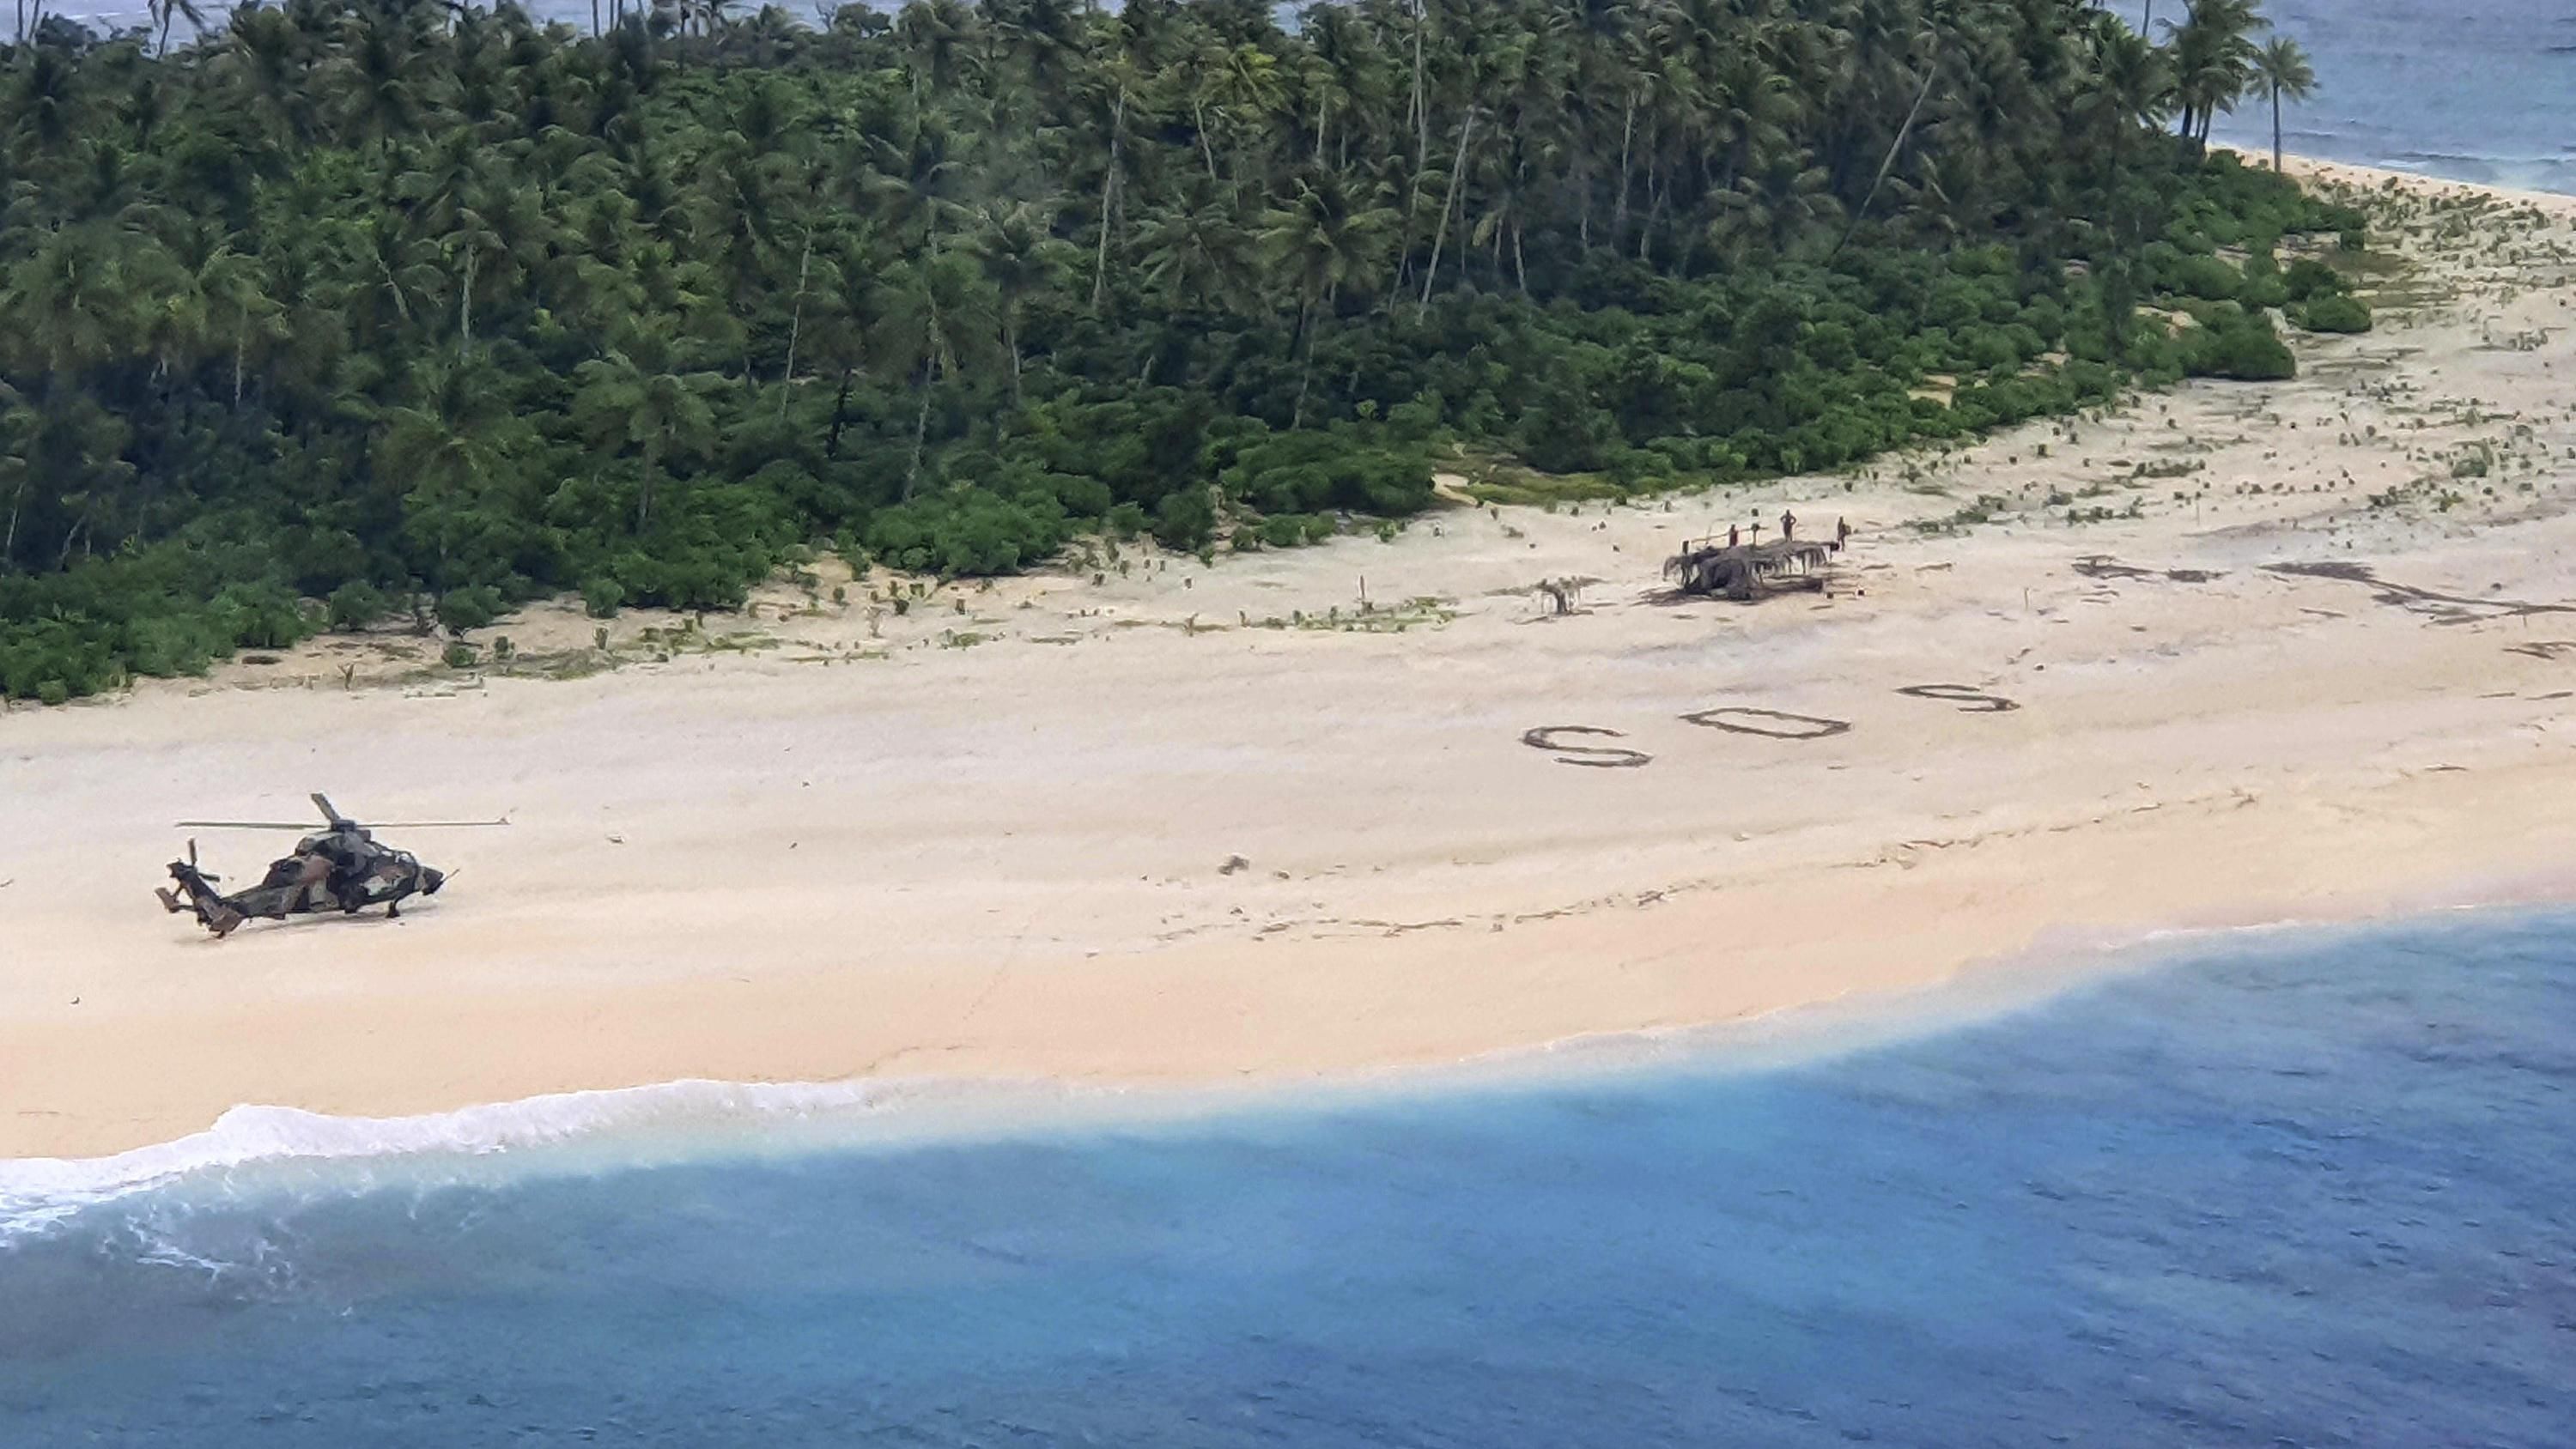 З безлюдного острова врятували людей завдяки надпису SOS на піску: фото, відео